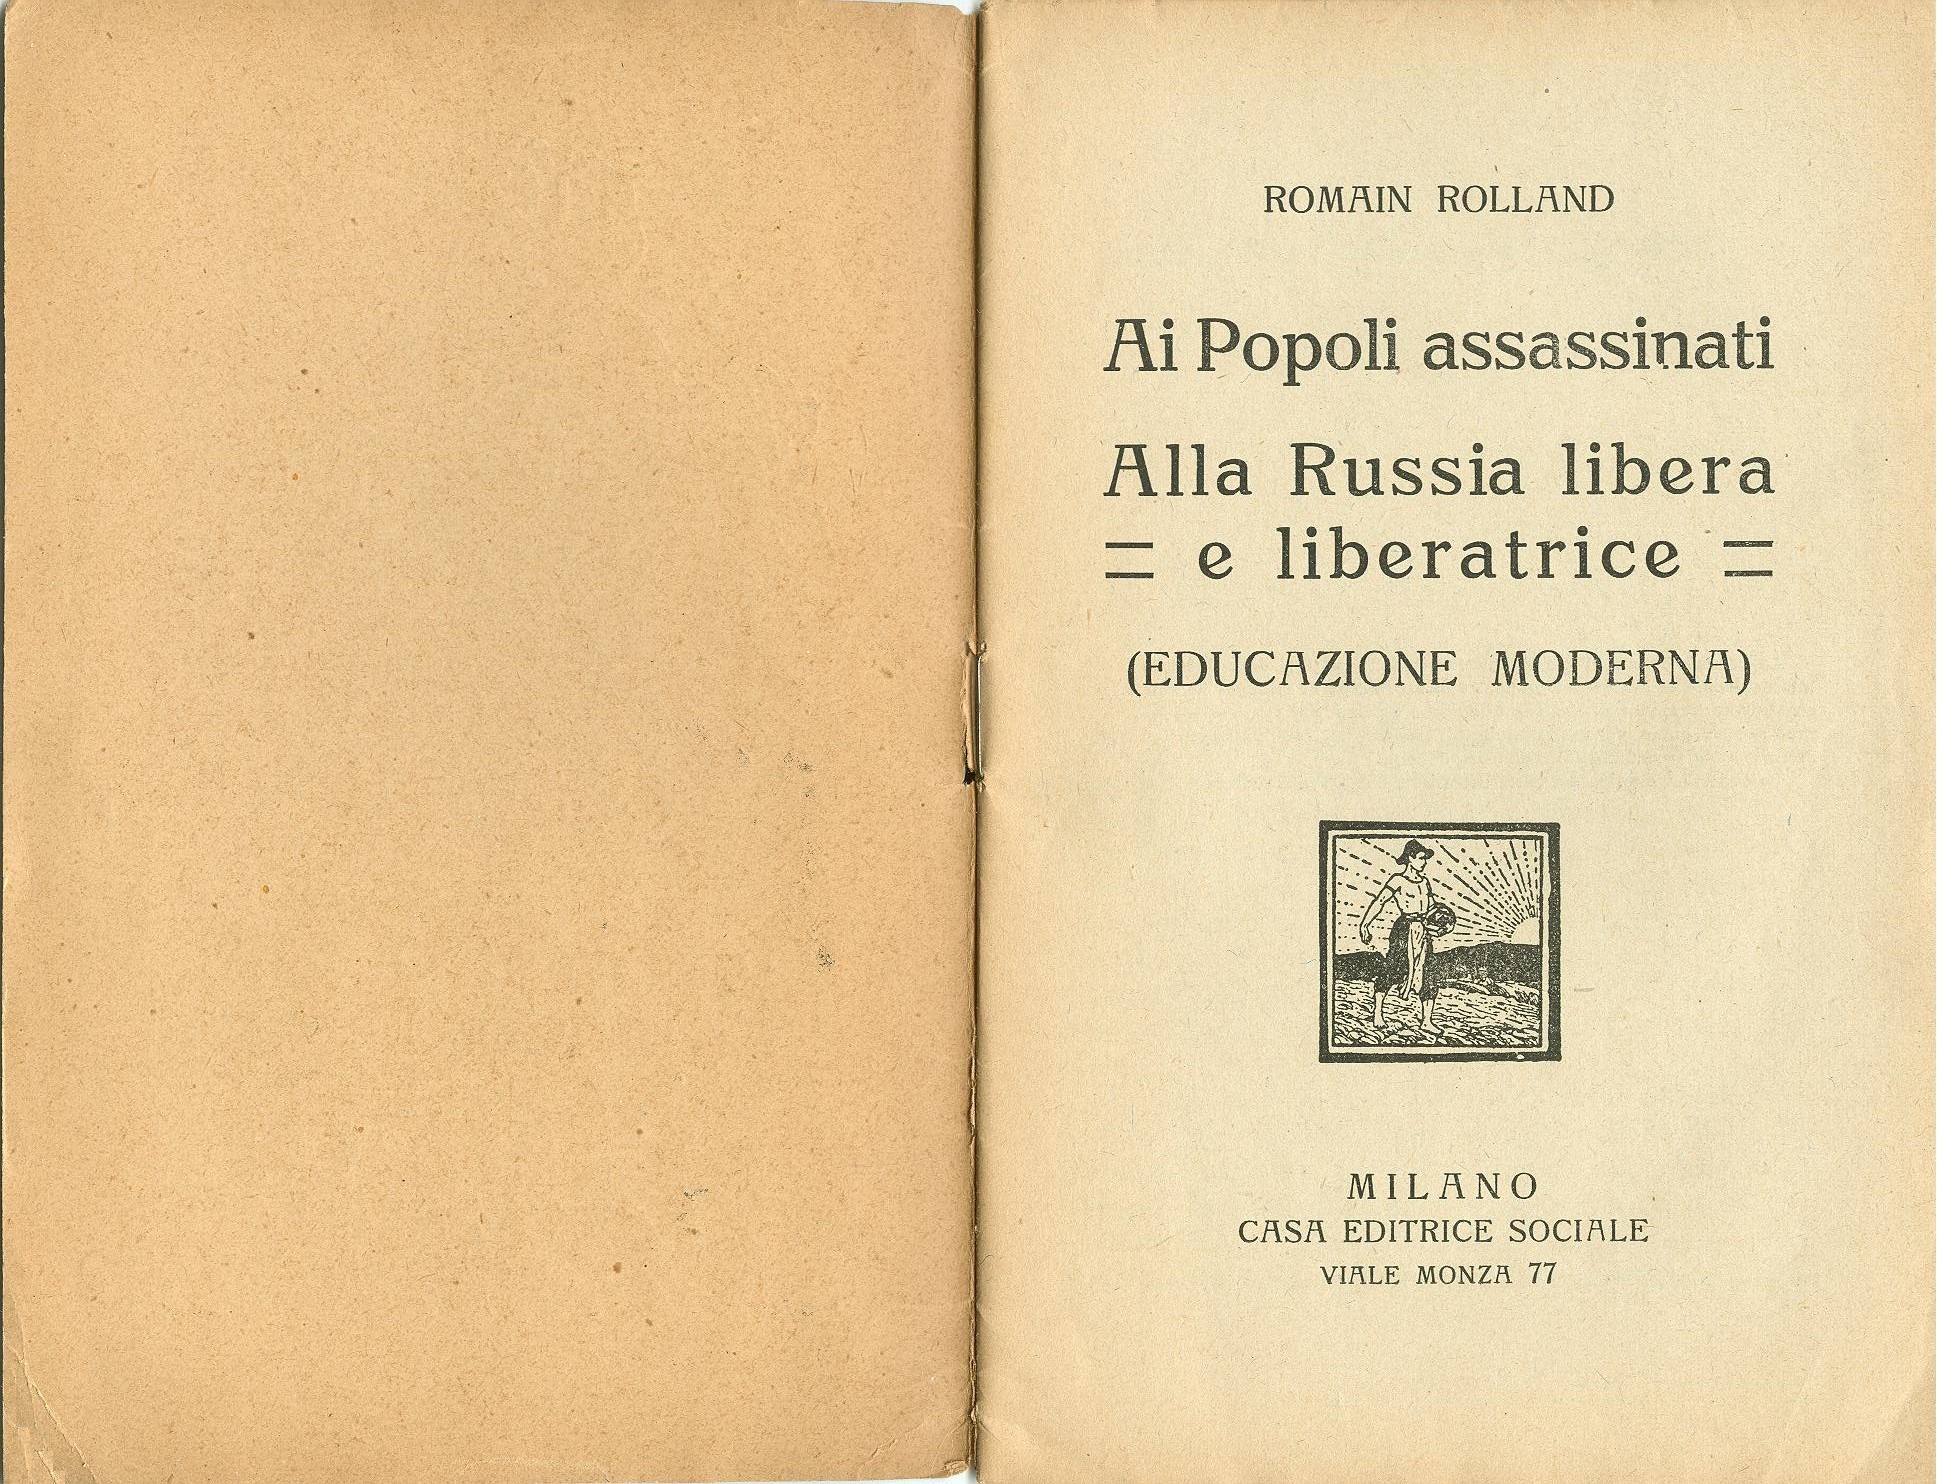 Romain Rolland, Ai popoli assassinati. Alla Russia libera e liberatrice. Educazione moderna (1921) - pag. 2